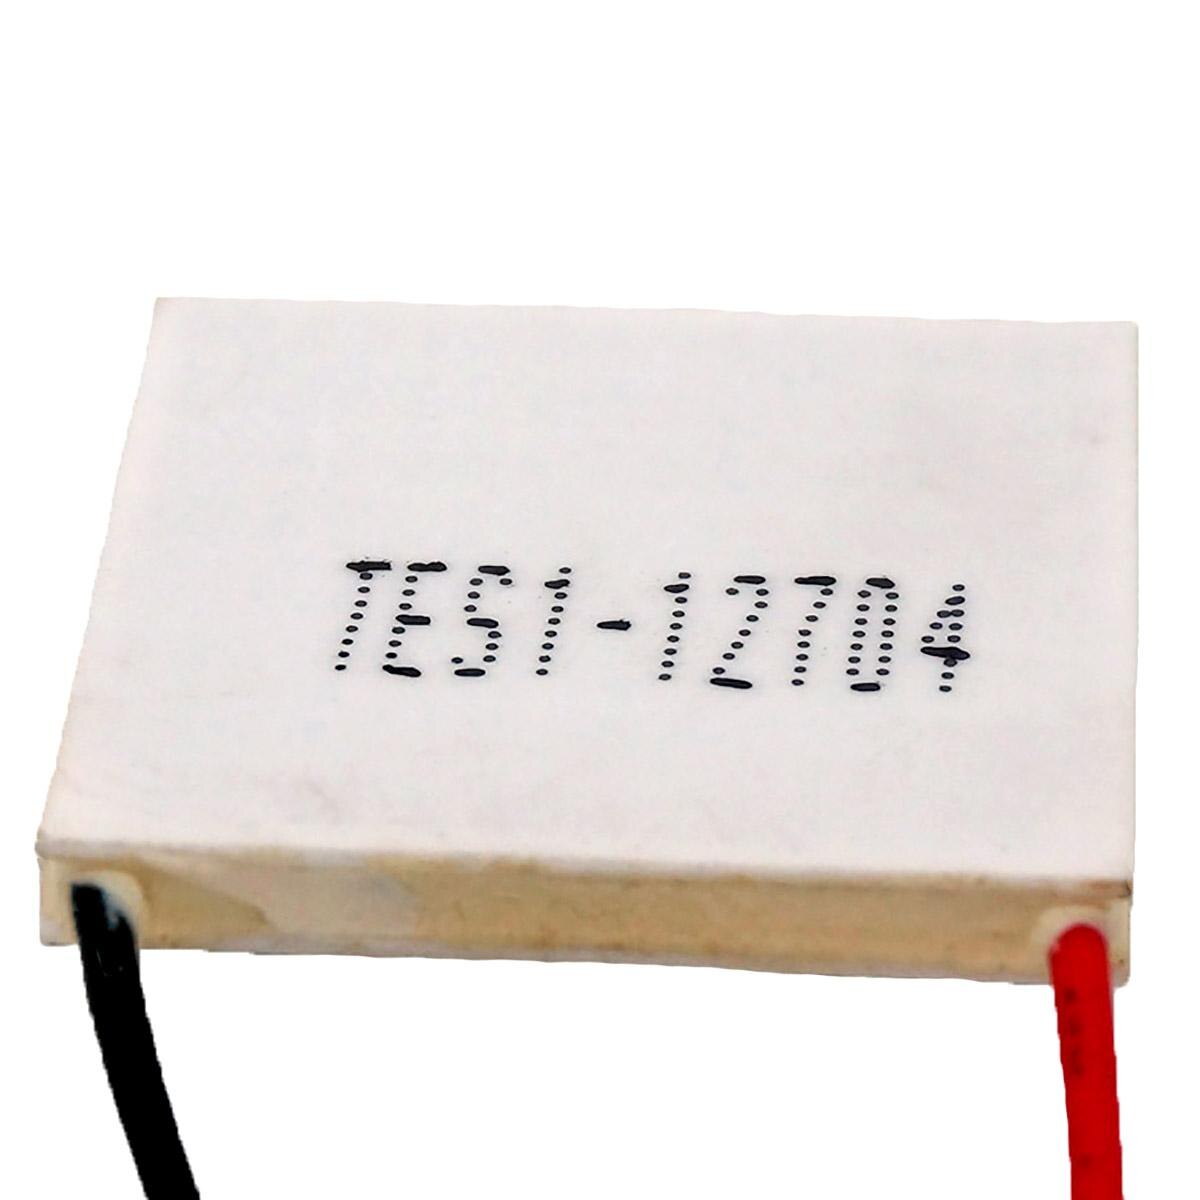 TES1-12704 Heatsink Thermo-elektrische Koeler Peltier Koelplaat 30x30mm Koeling Module